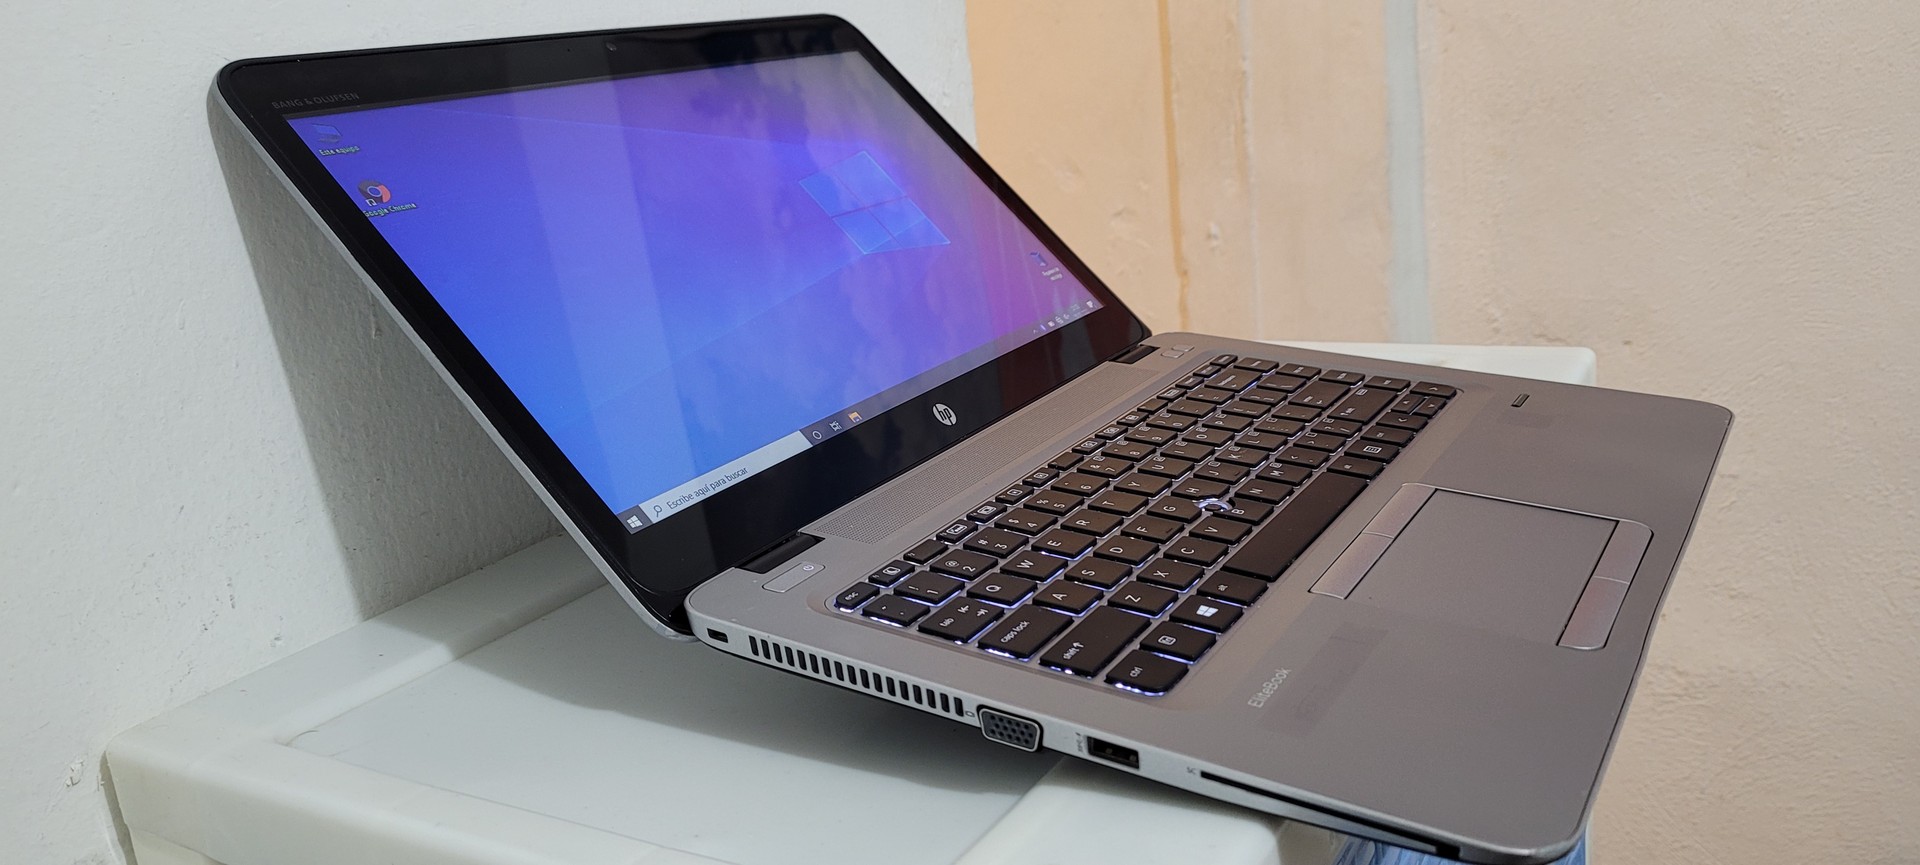 computadoras y laptops - laptop hp Slim 14 Pulg Core i5 6ta Gen Ram 8gb ddr4 Disco 500gb wifi 1